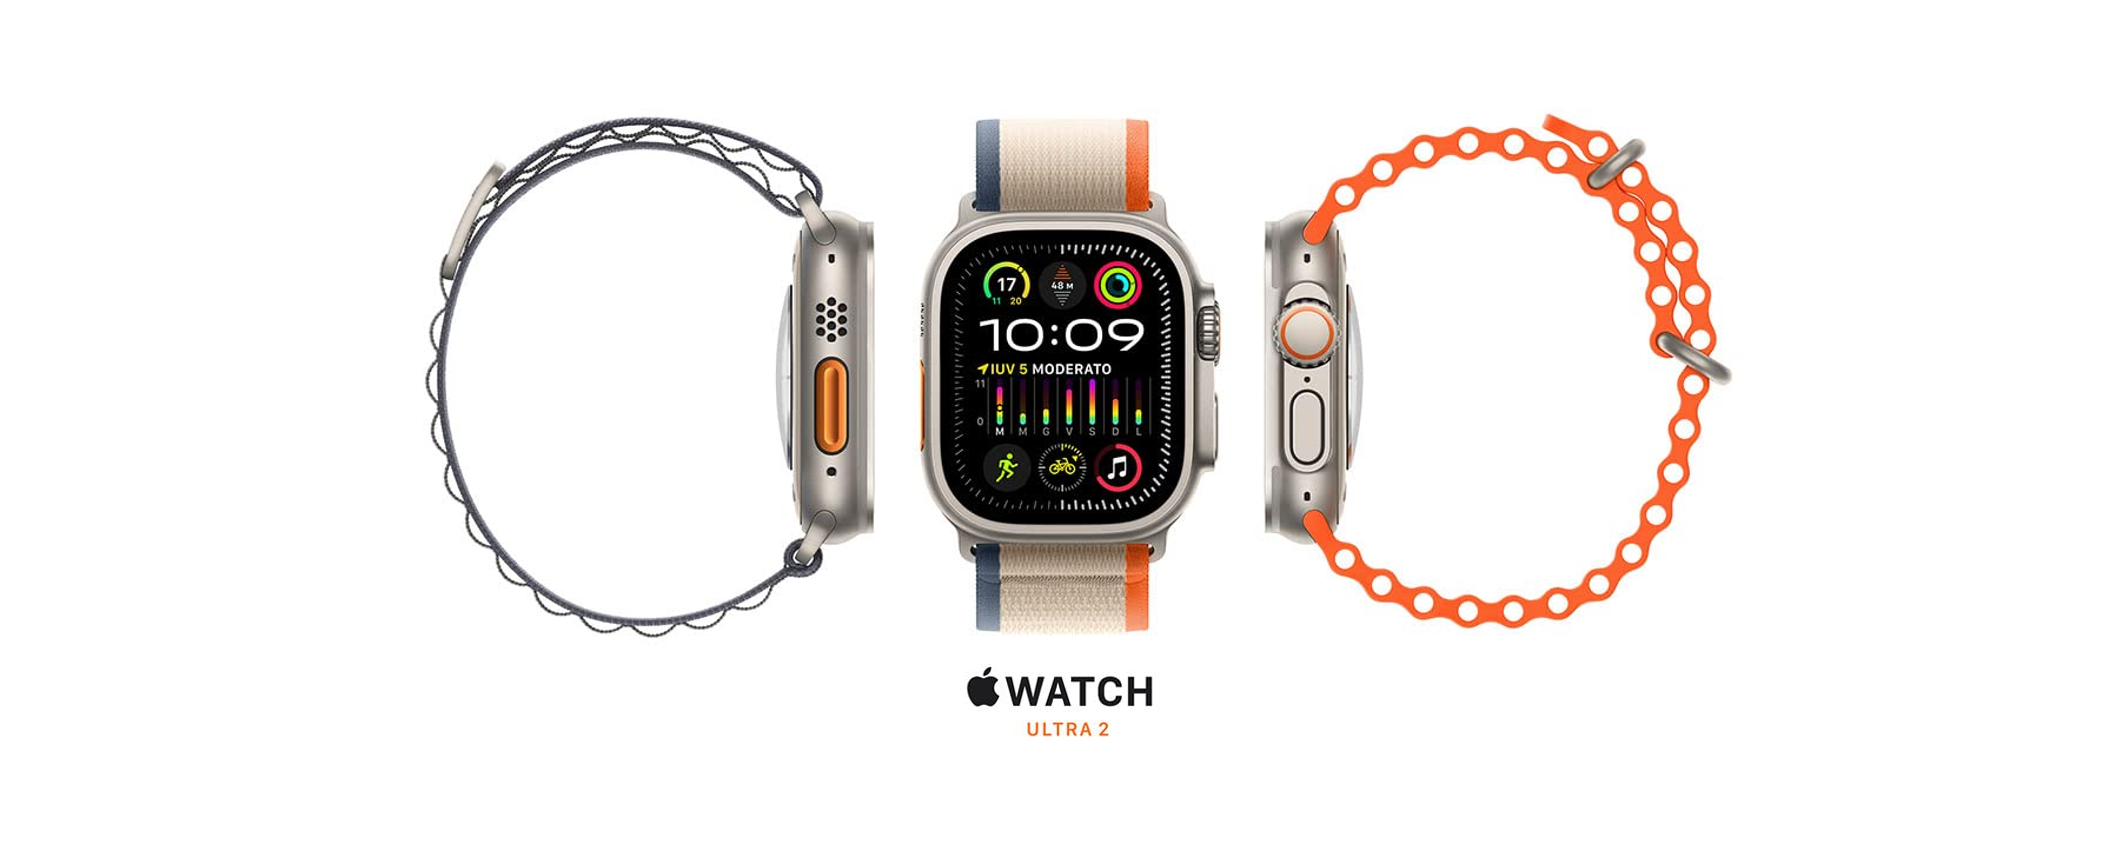 Apple Watch Ultra 2 in SCONTO su Amazon: restano poche unità